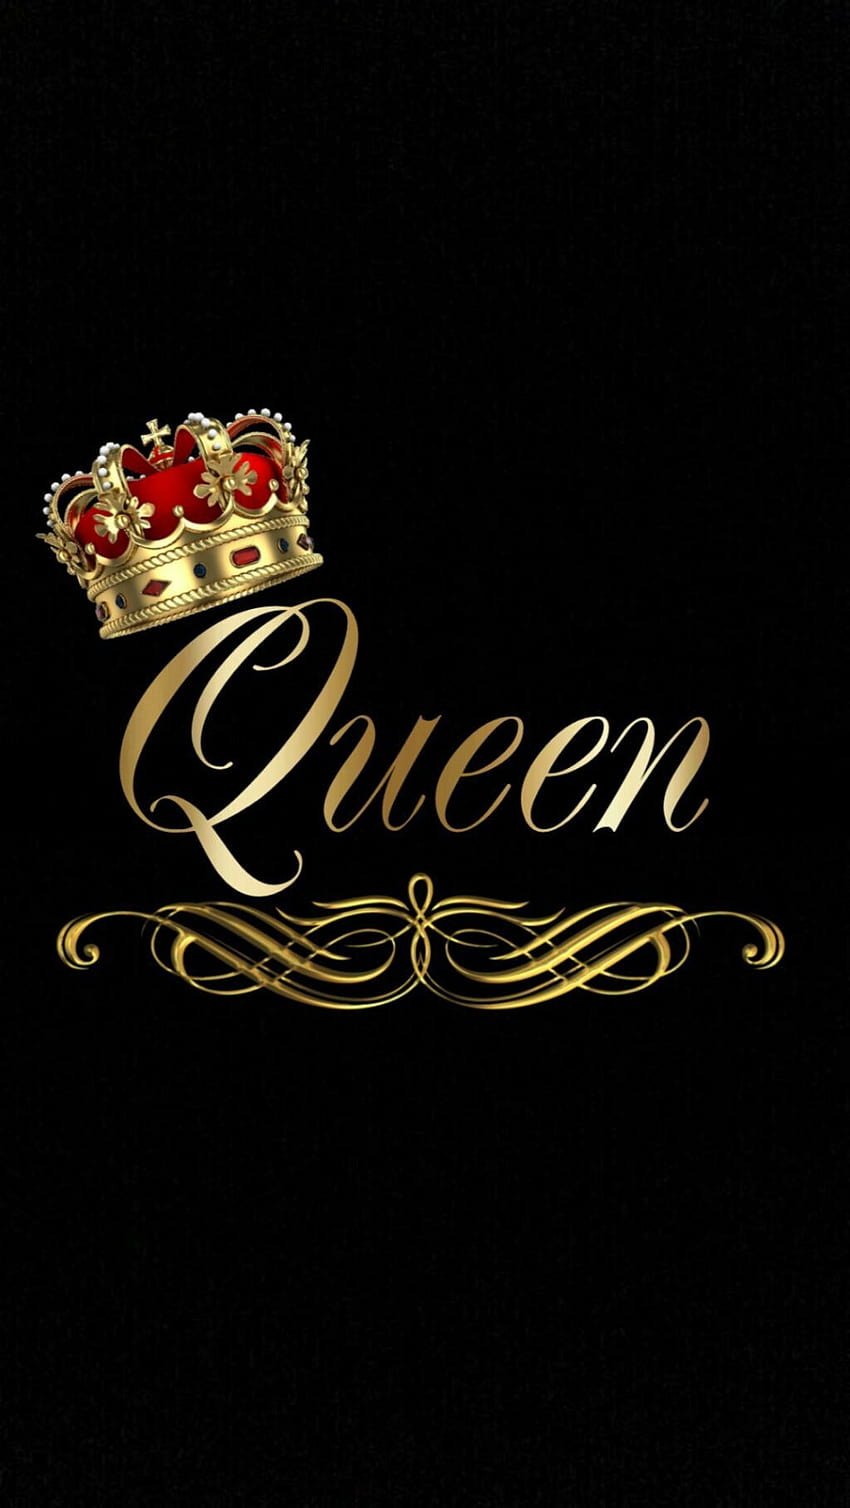 515 Queen Emoji Images Stock Photos  Vectors  Shutterstock